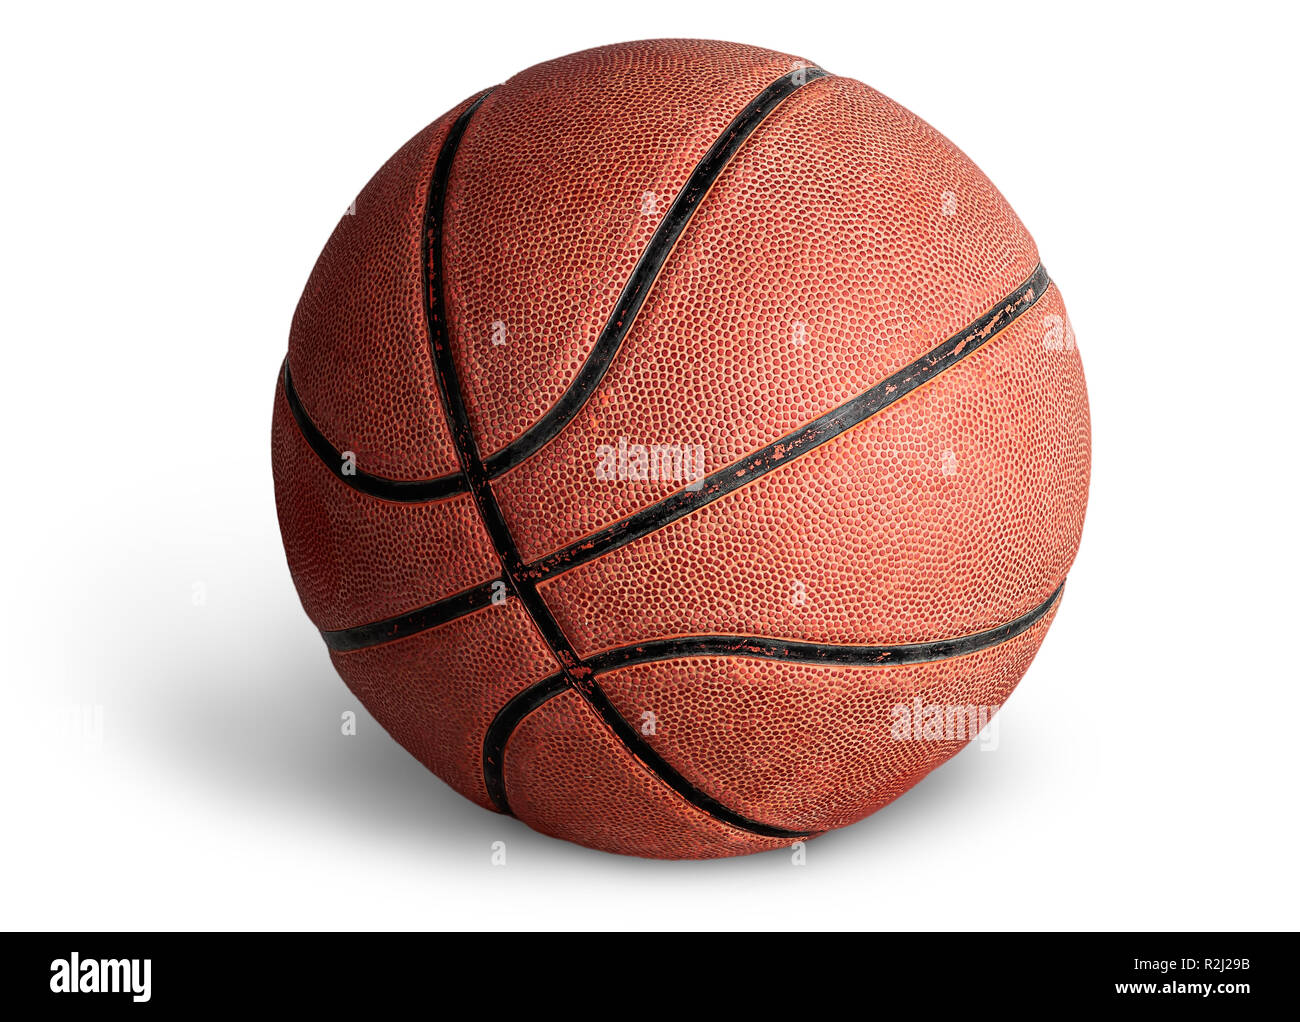 Old basketball ball Stock Photo